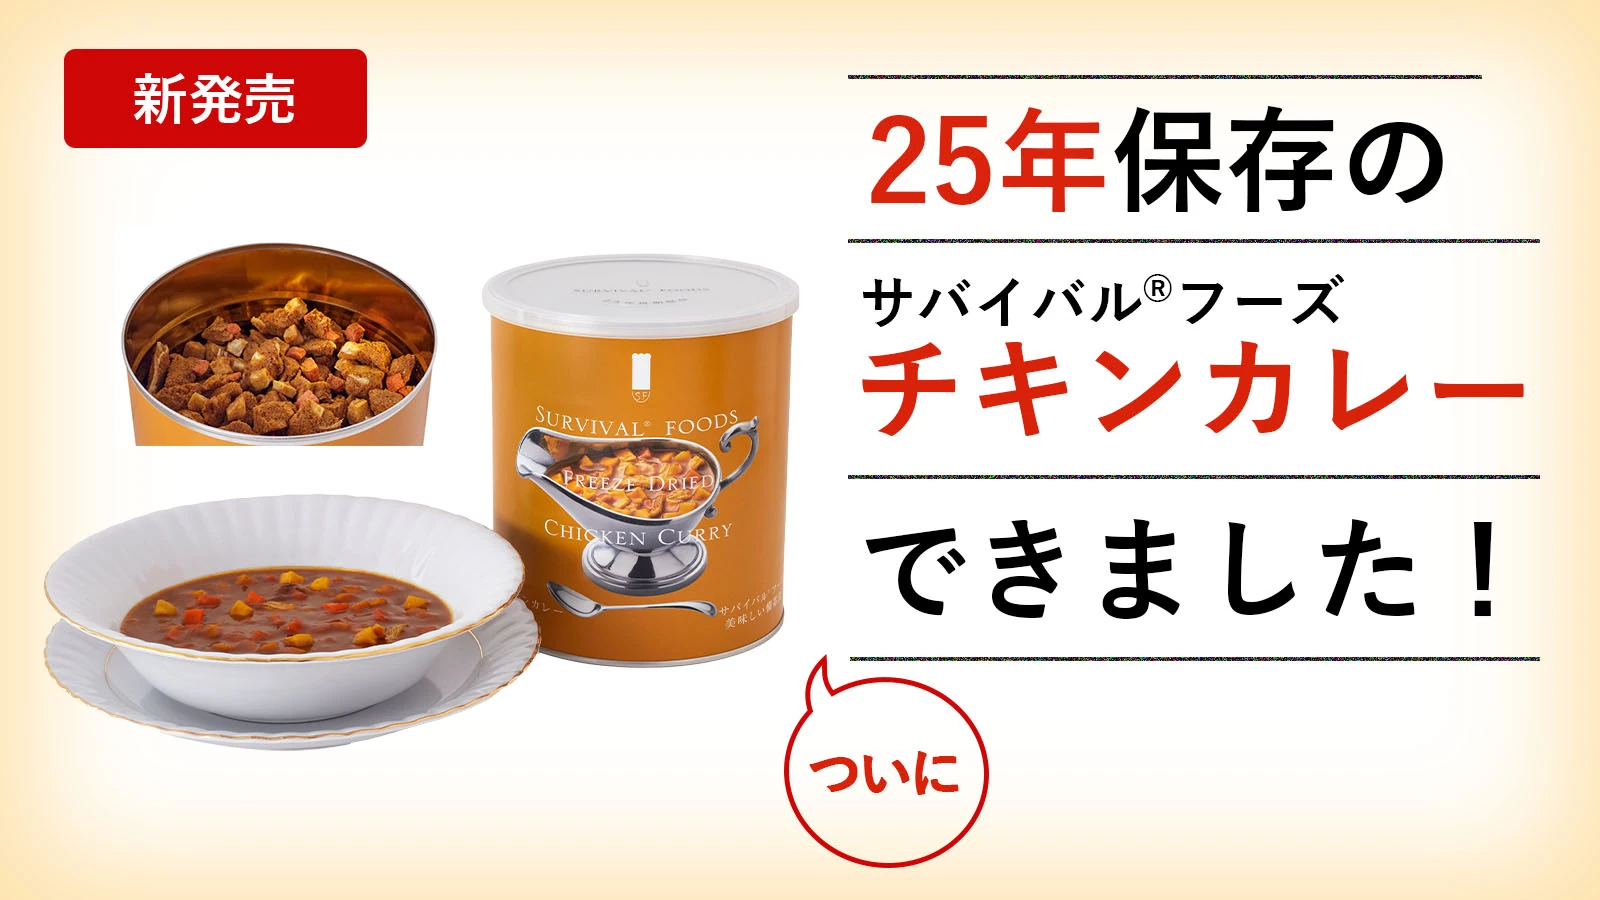 大缶]クラッカーとチキンカレーのセット(6缶詰合)｜サバイバルフーズ 